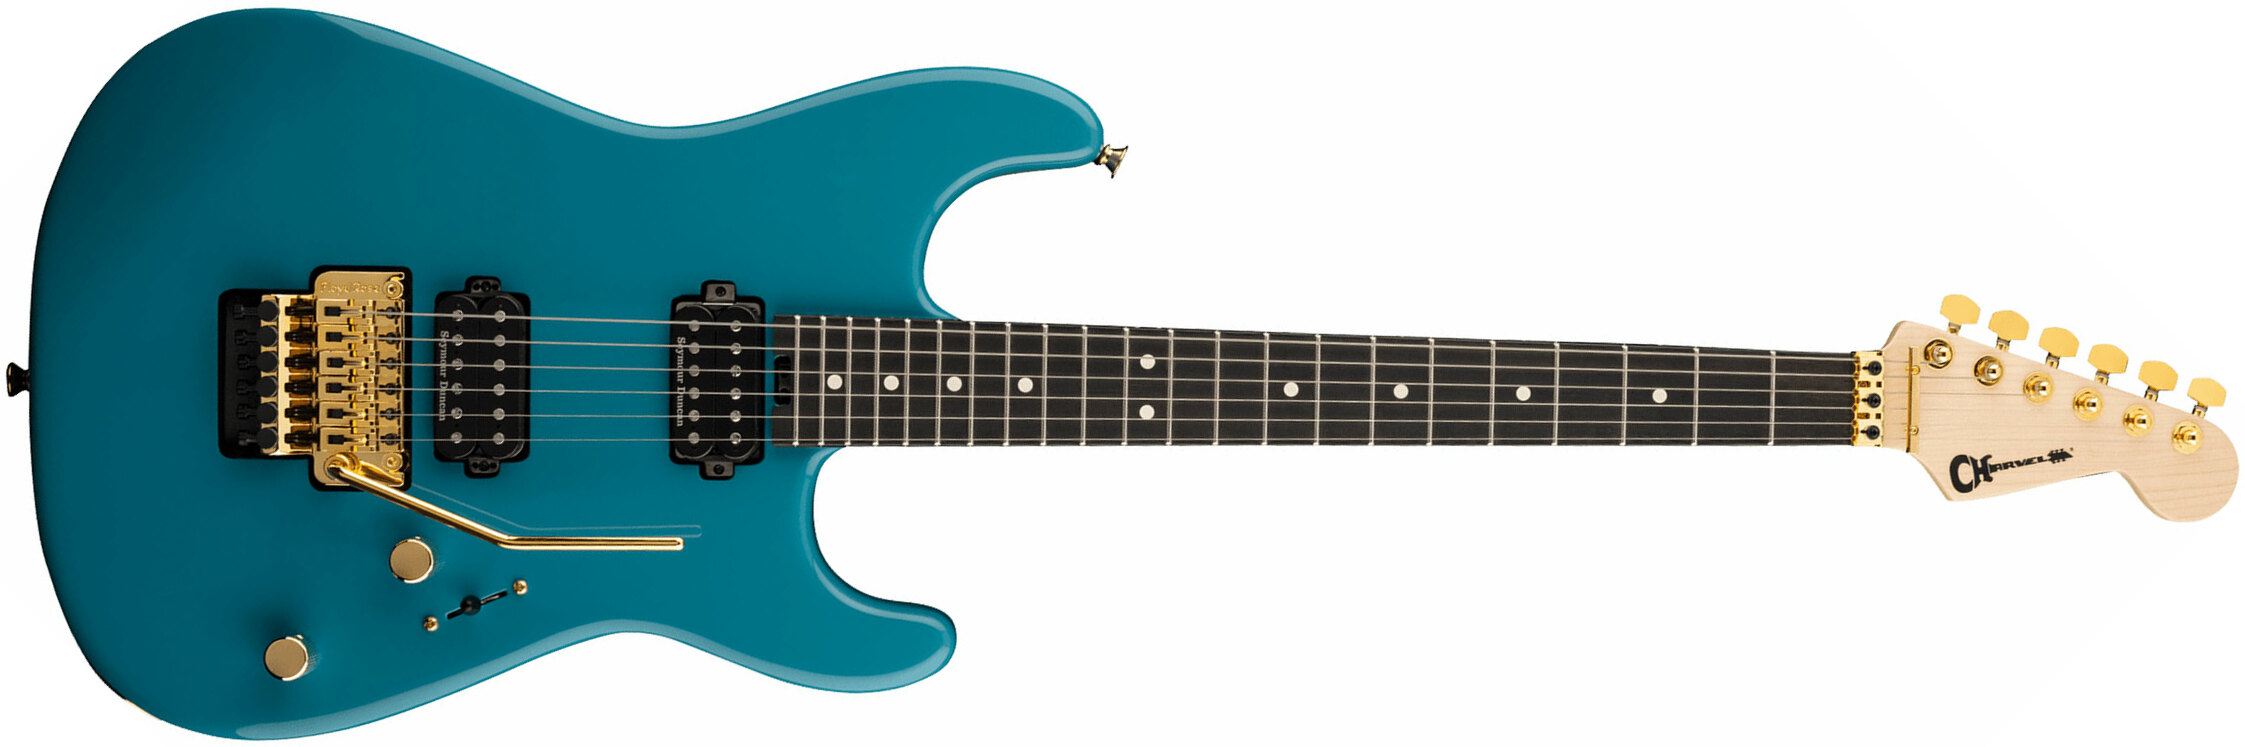 Charvel San Dimas Style 1 Hh Fr E Pro-mod Seymour Duncan Eb - Miami Blue - Str shape electric guitar - Main picture